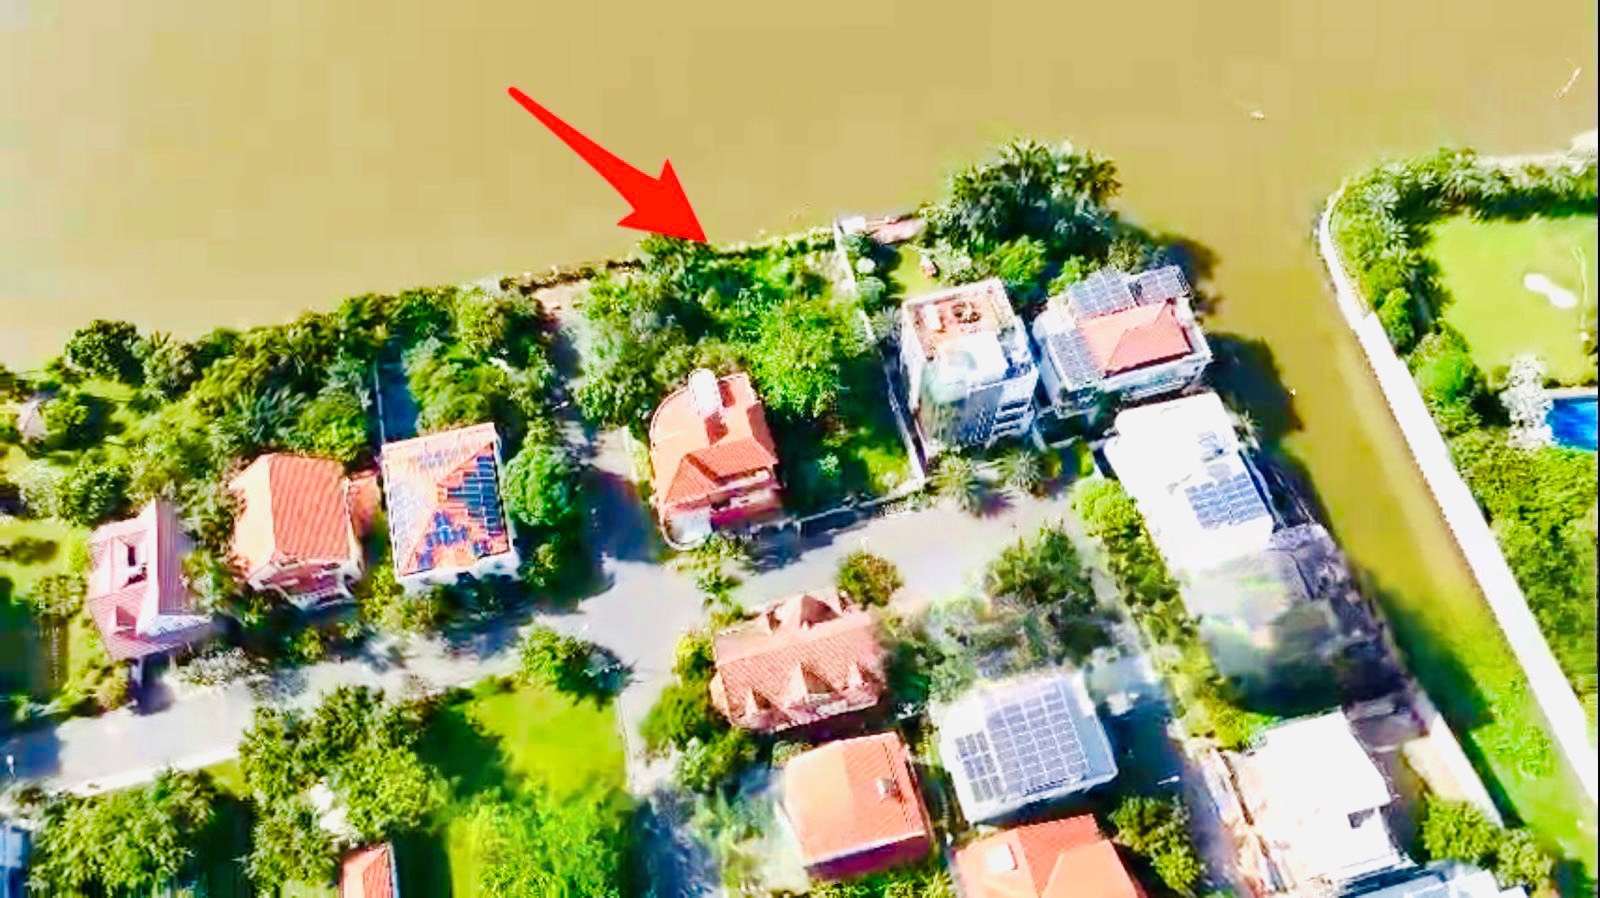 Bán Đất Biệt Thự Giáp Sông Sài Gòn,Thảo Điền,Quận 2 DT:600m2(16x38m) Vị Trí Cực Đẹp